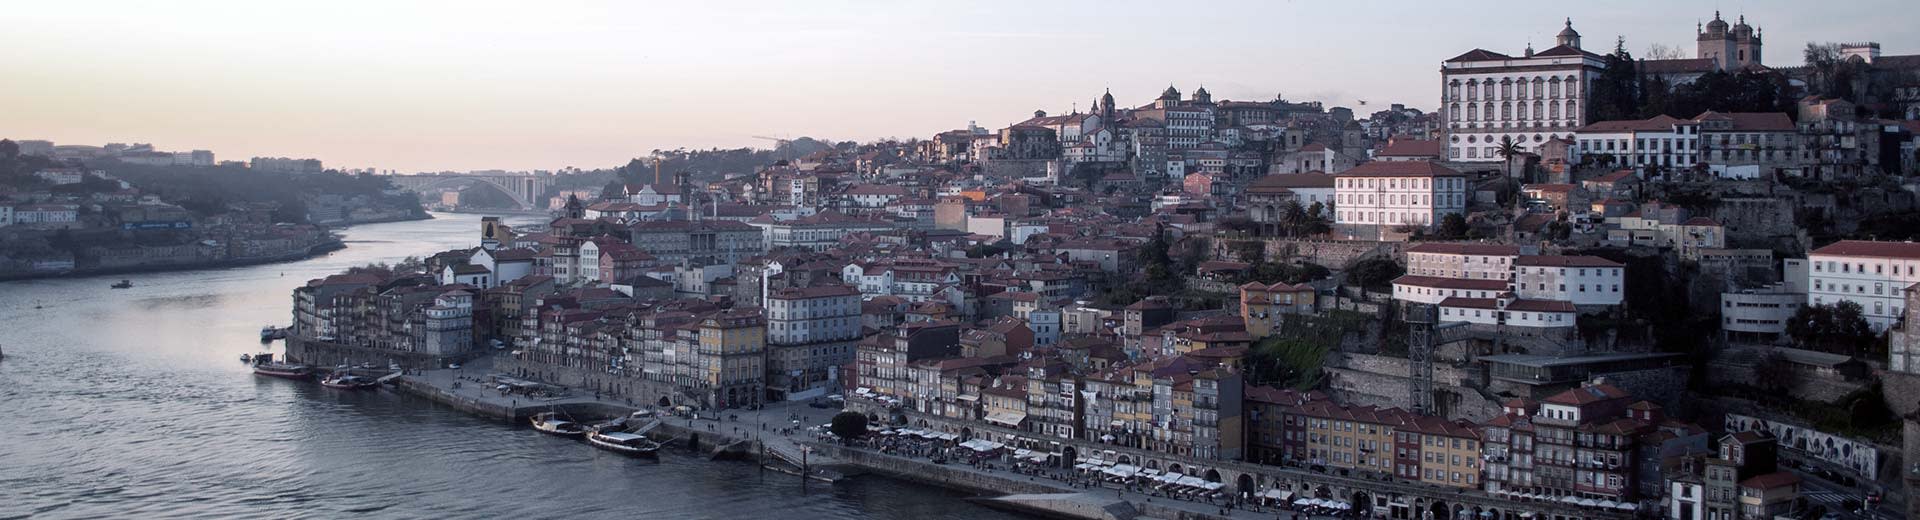 La hermosa ciudad de Porto, con edificios históricos ubicados contra un cielo gris y un río fluido.